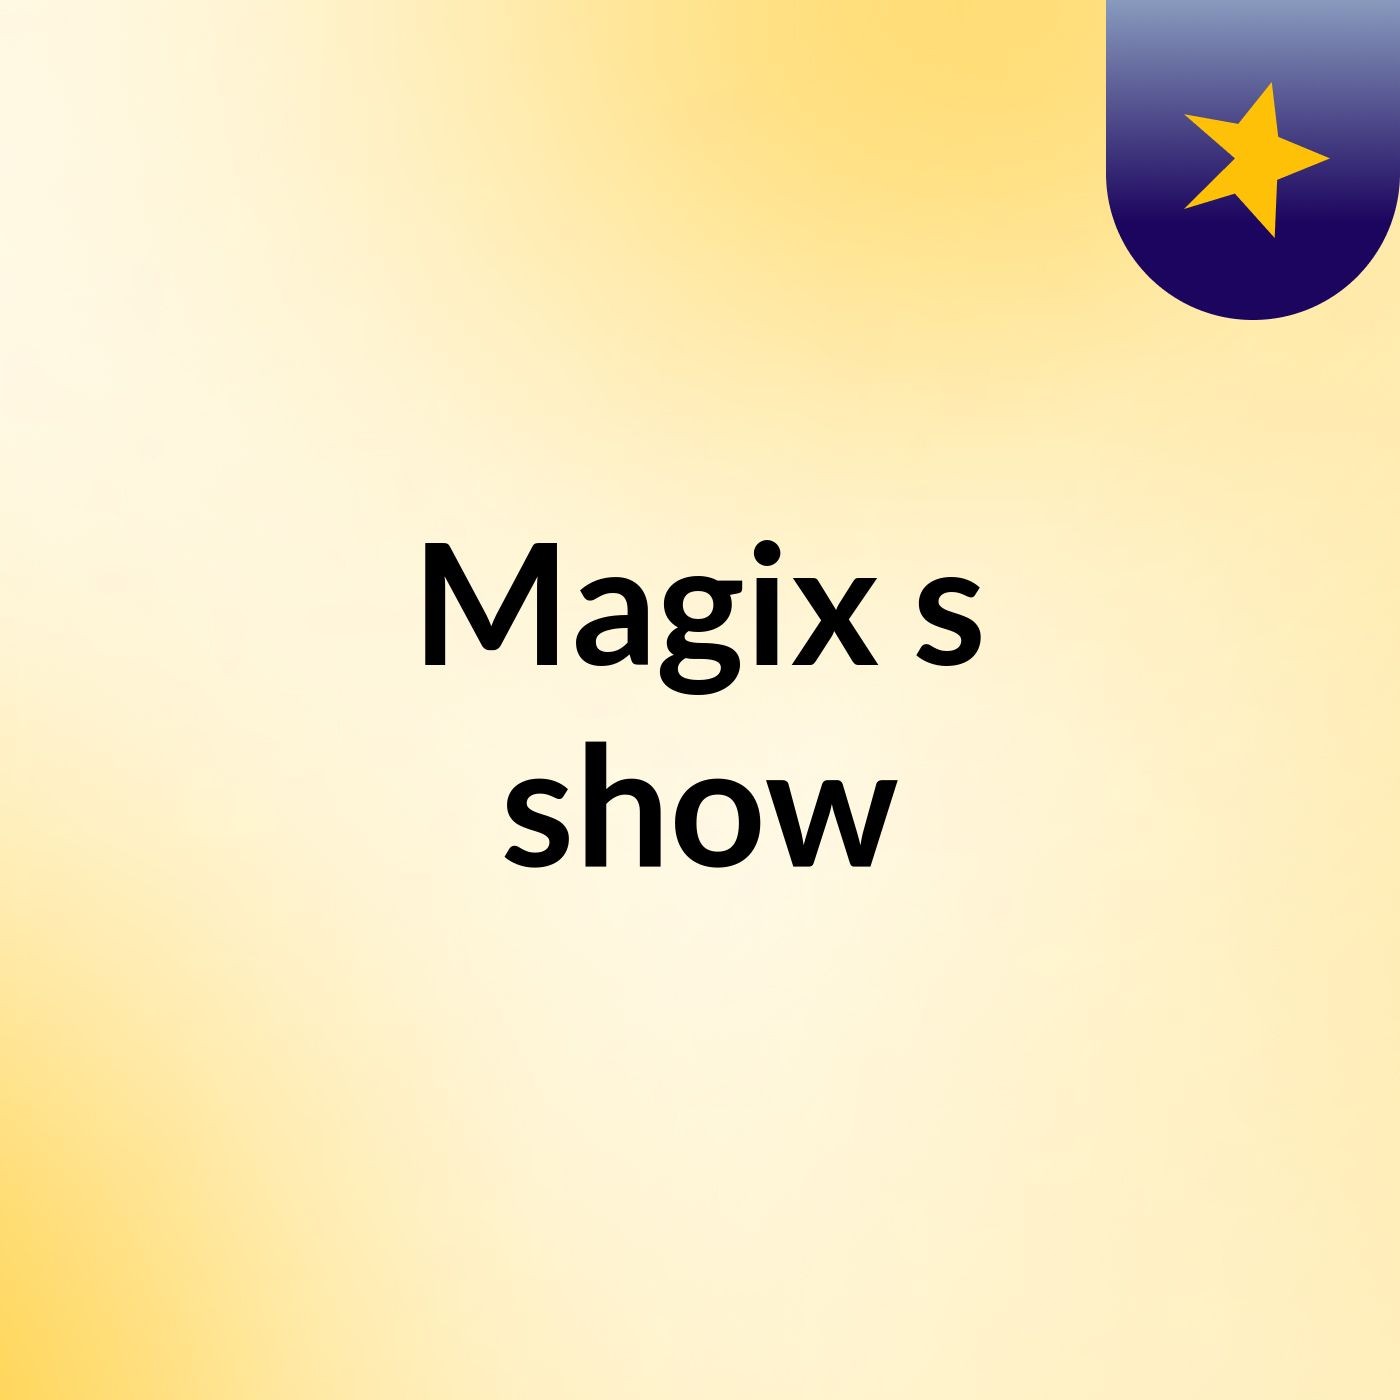 Magix's show